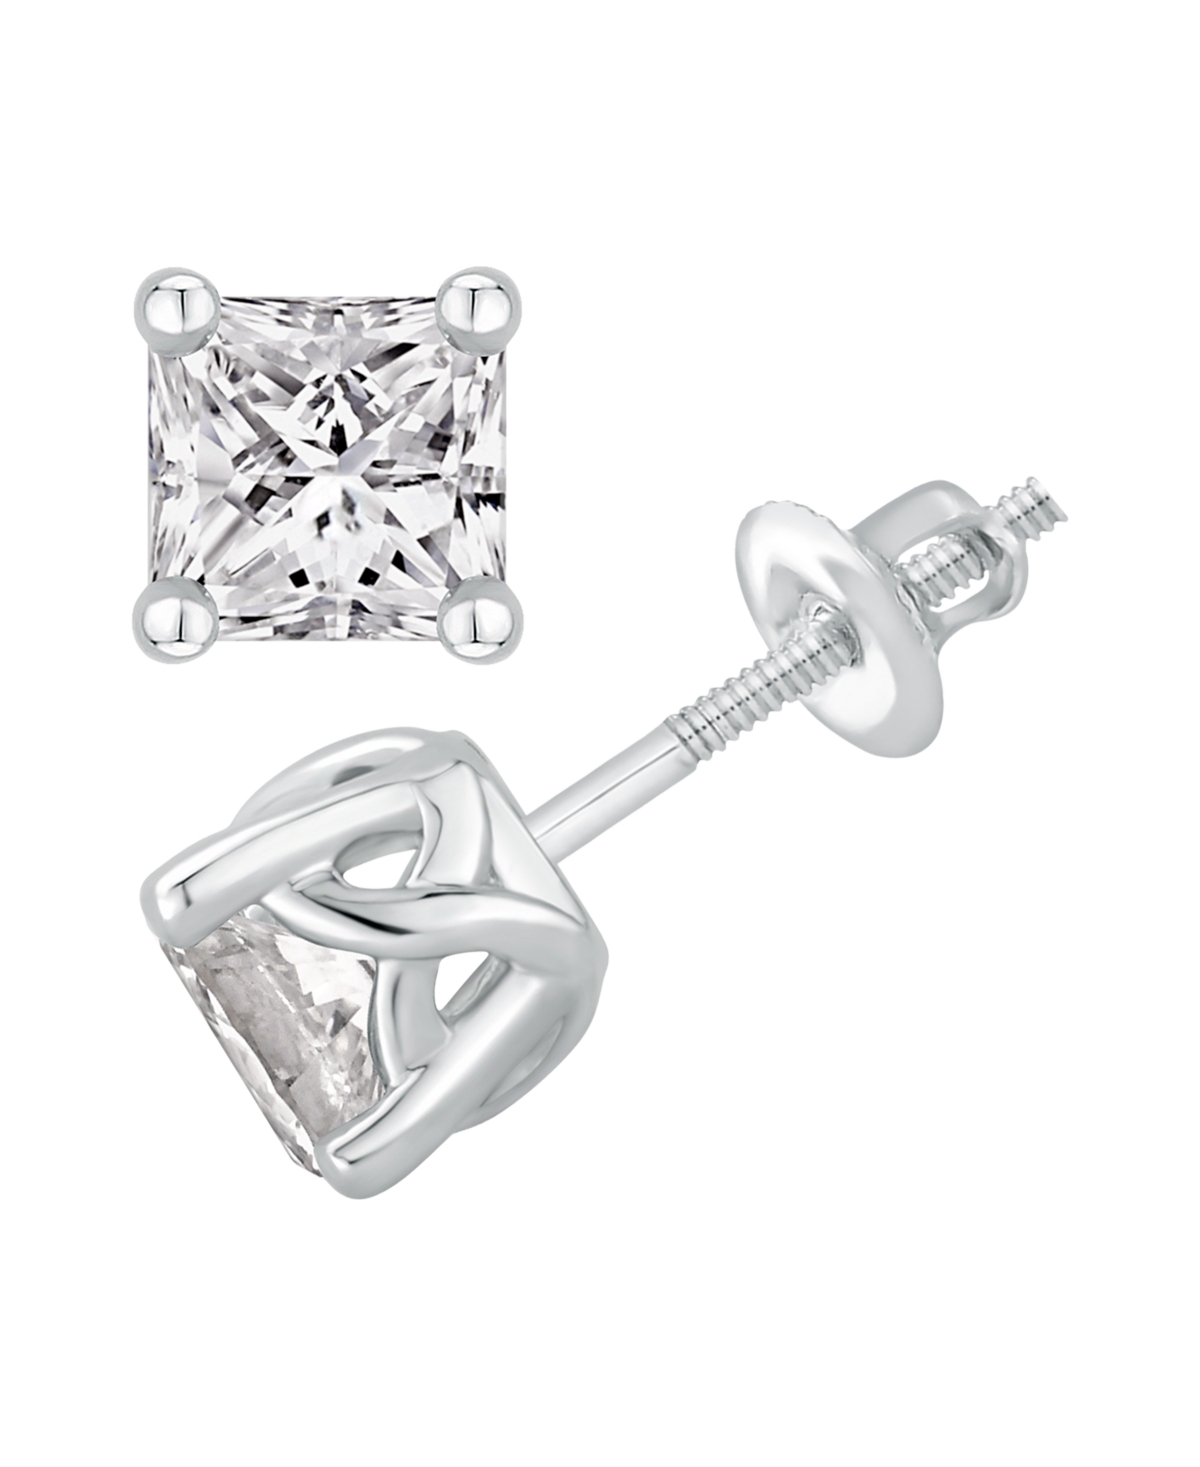 Gia Certified Diamonds Gia Certified Diamond Princess Stud Earrings (1 ct. t.w.) in 14K White Gold